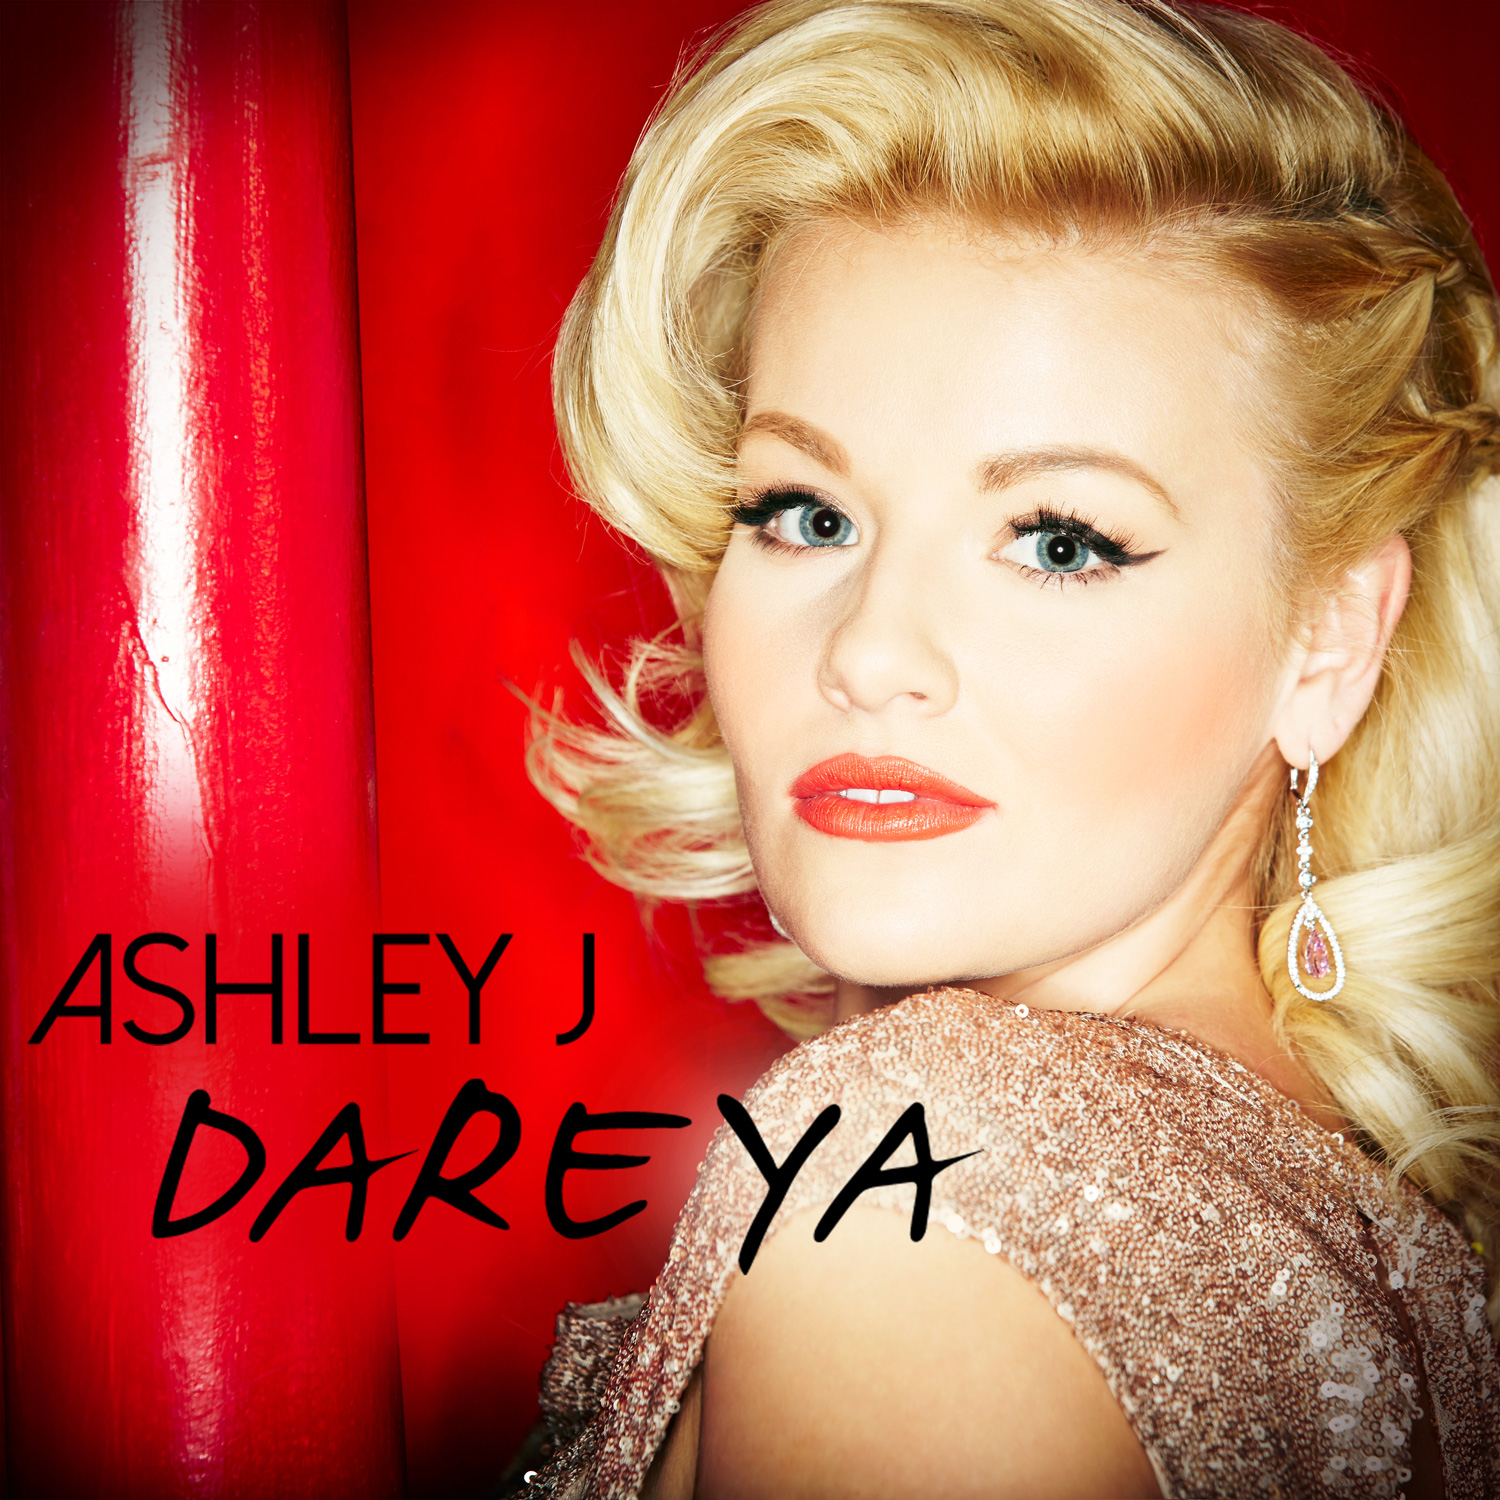  Ashley J – “Dare Ya”